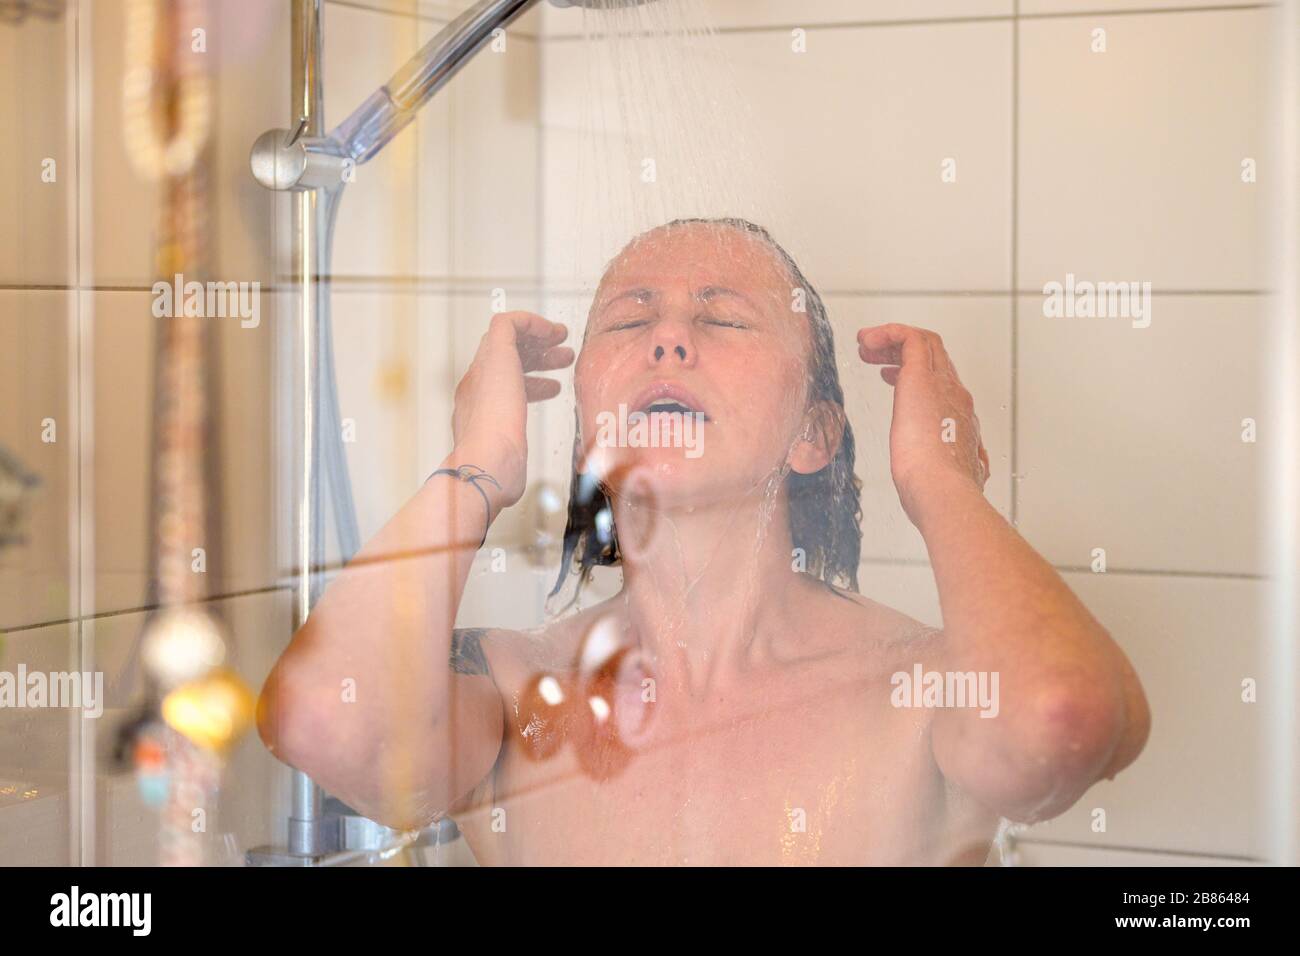 Frau, die eine dampfende heiße Dusche genießt, die ihr Haar unter fließendem Wasser mit geschlossenen Augen in einem Nahporträt durch die Glaskabine in abspült Stockfoto